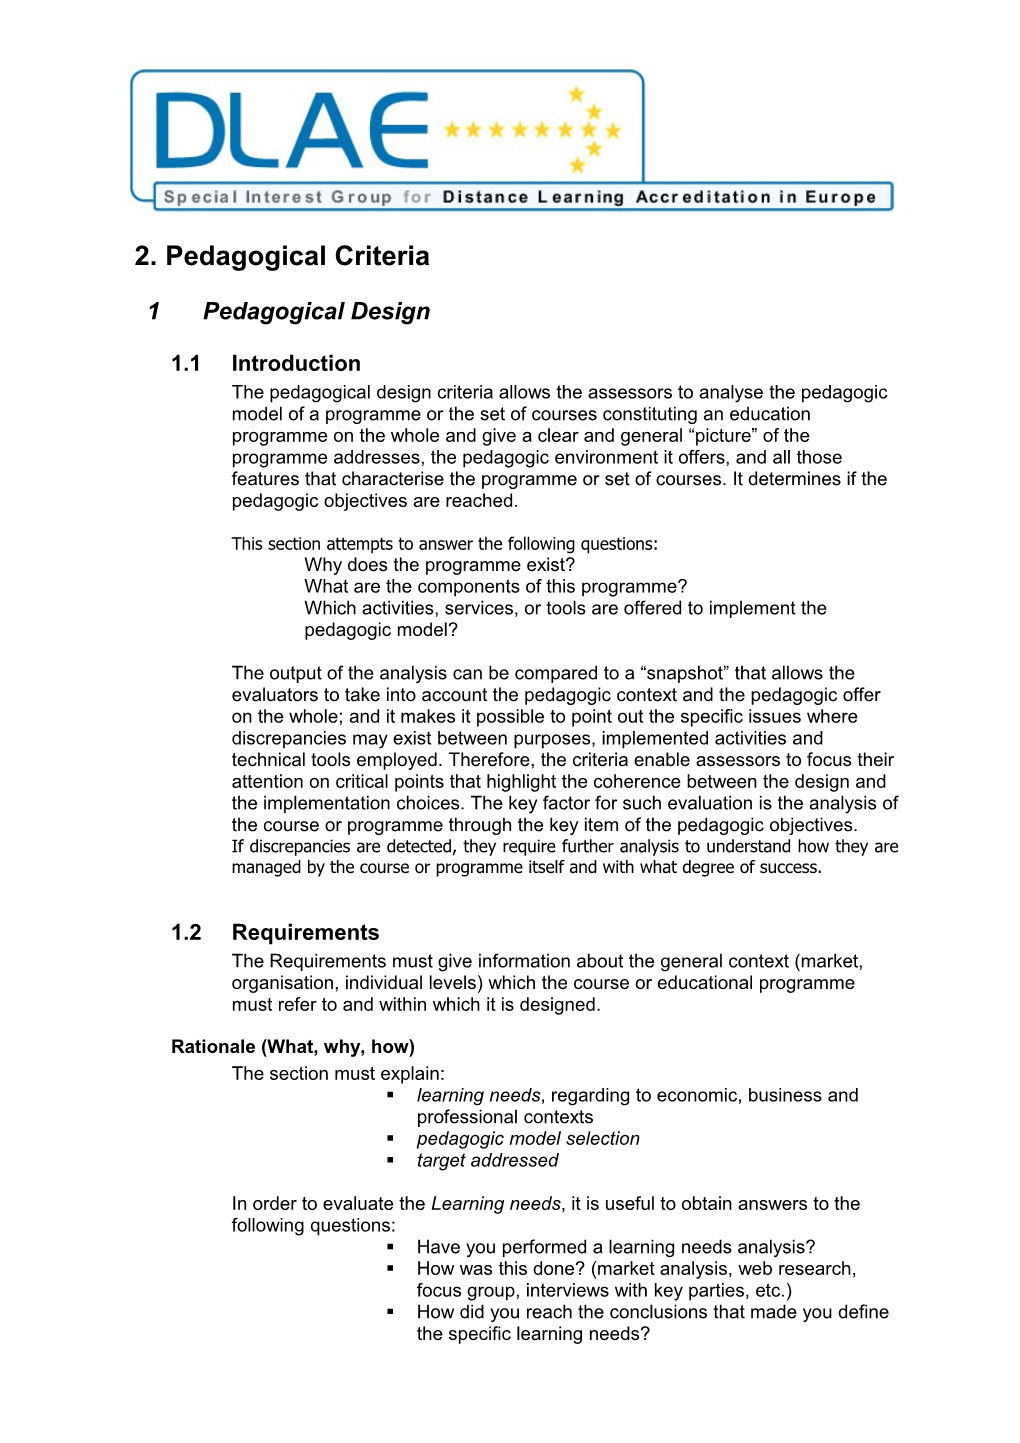 2.Pedagogical Criteria